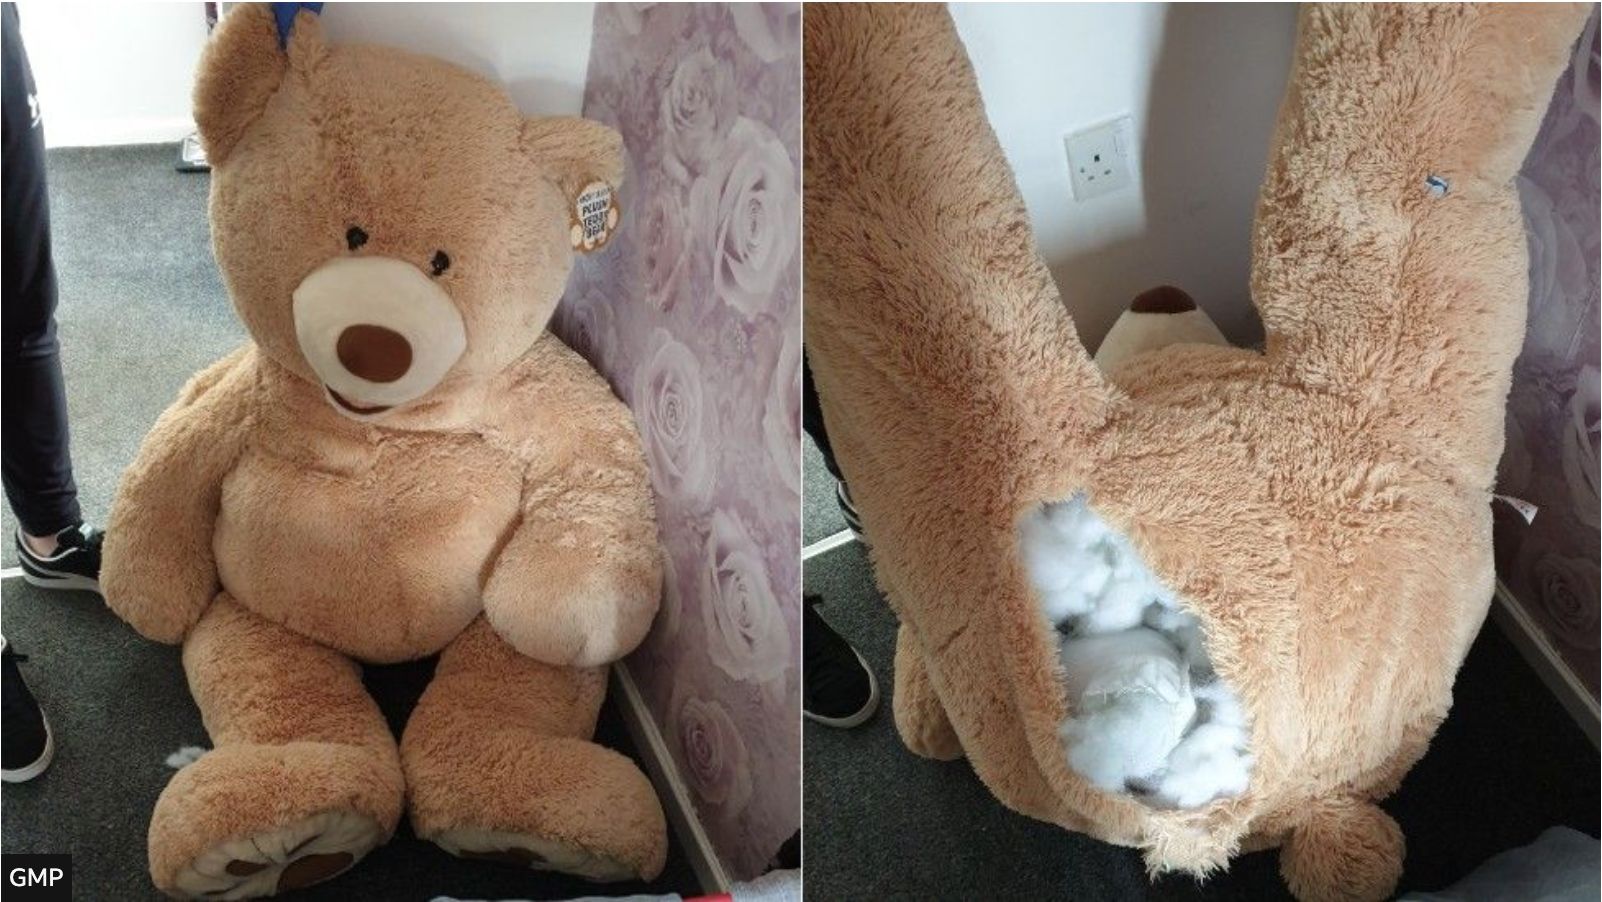 The giant teddy bear the car thief hid inside